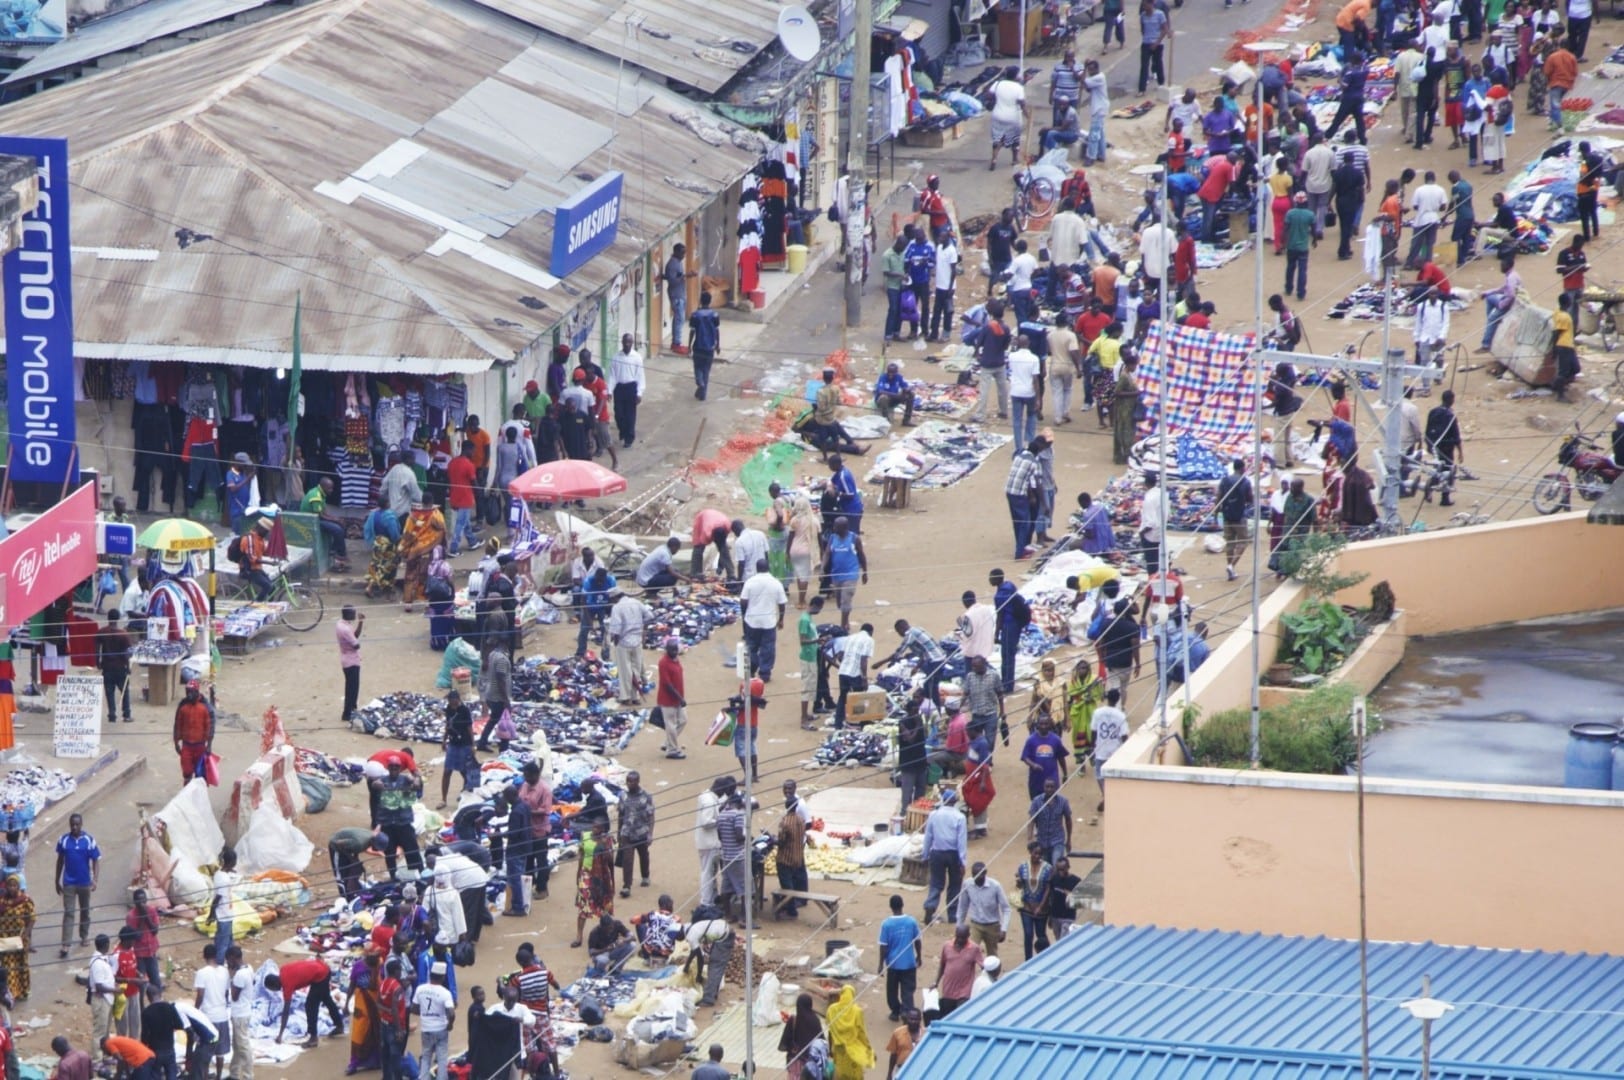 La vista de pájaro del mercado de Kariakoo en Dar es Salaam. Dar es Salaam Tanzania